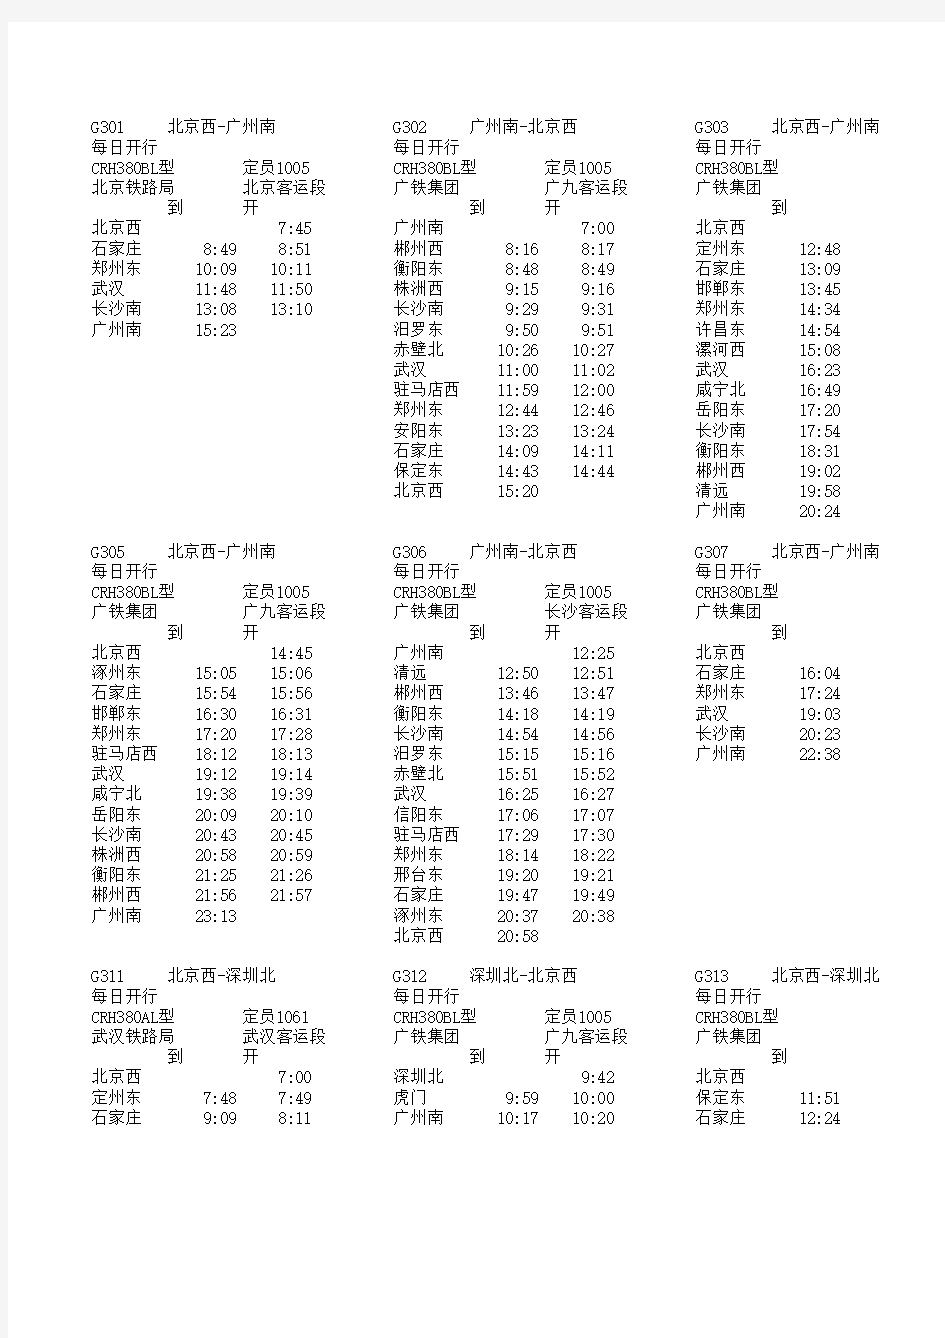 2013年最新京广高铁列车时刻表